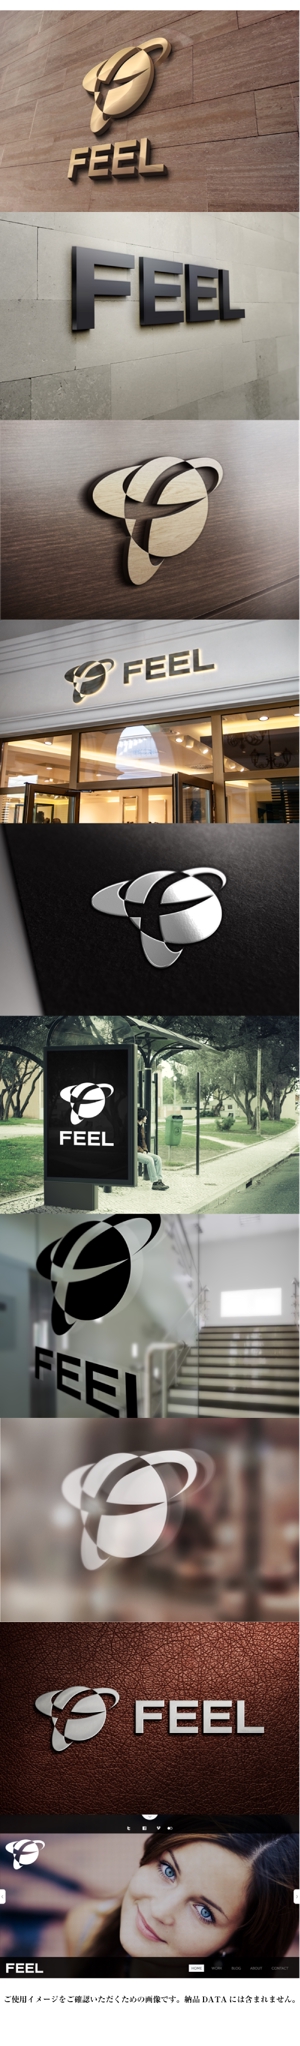 yuizm ()さんの「FEEL」株式会社のロゴへの提案